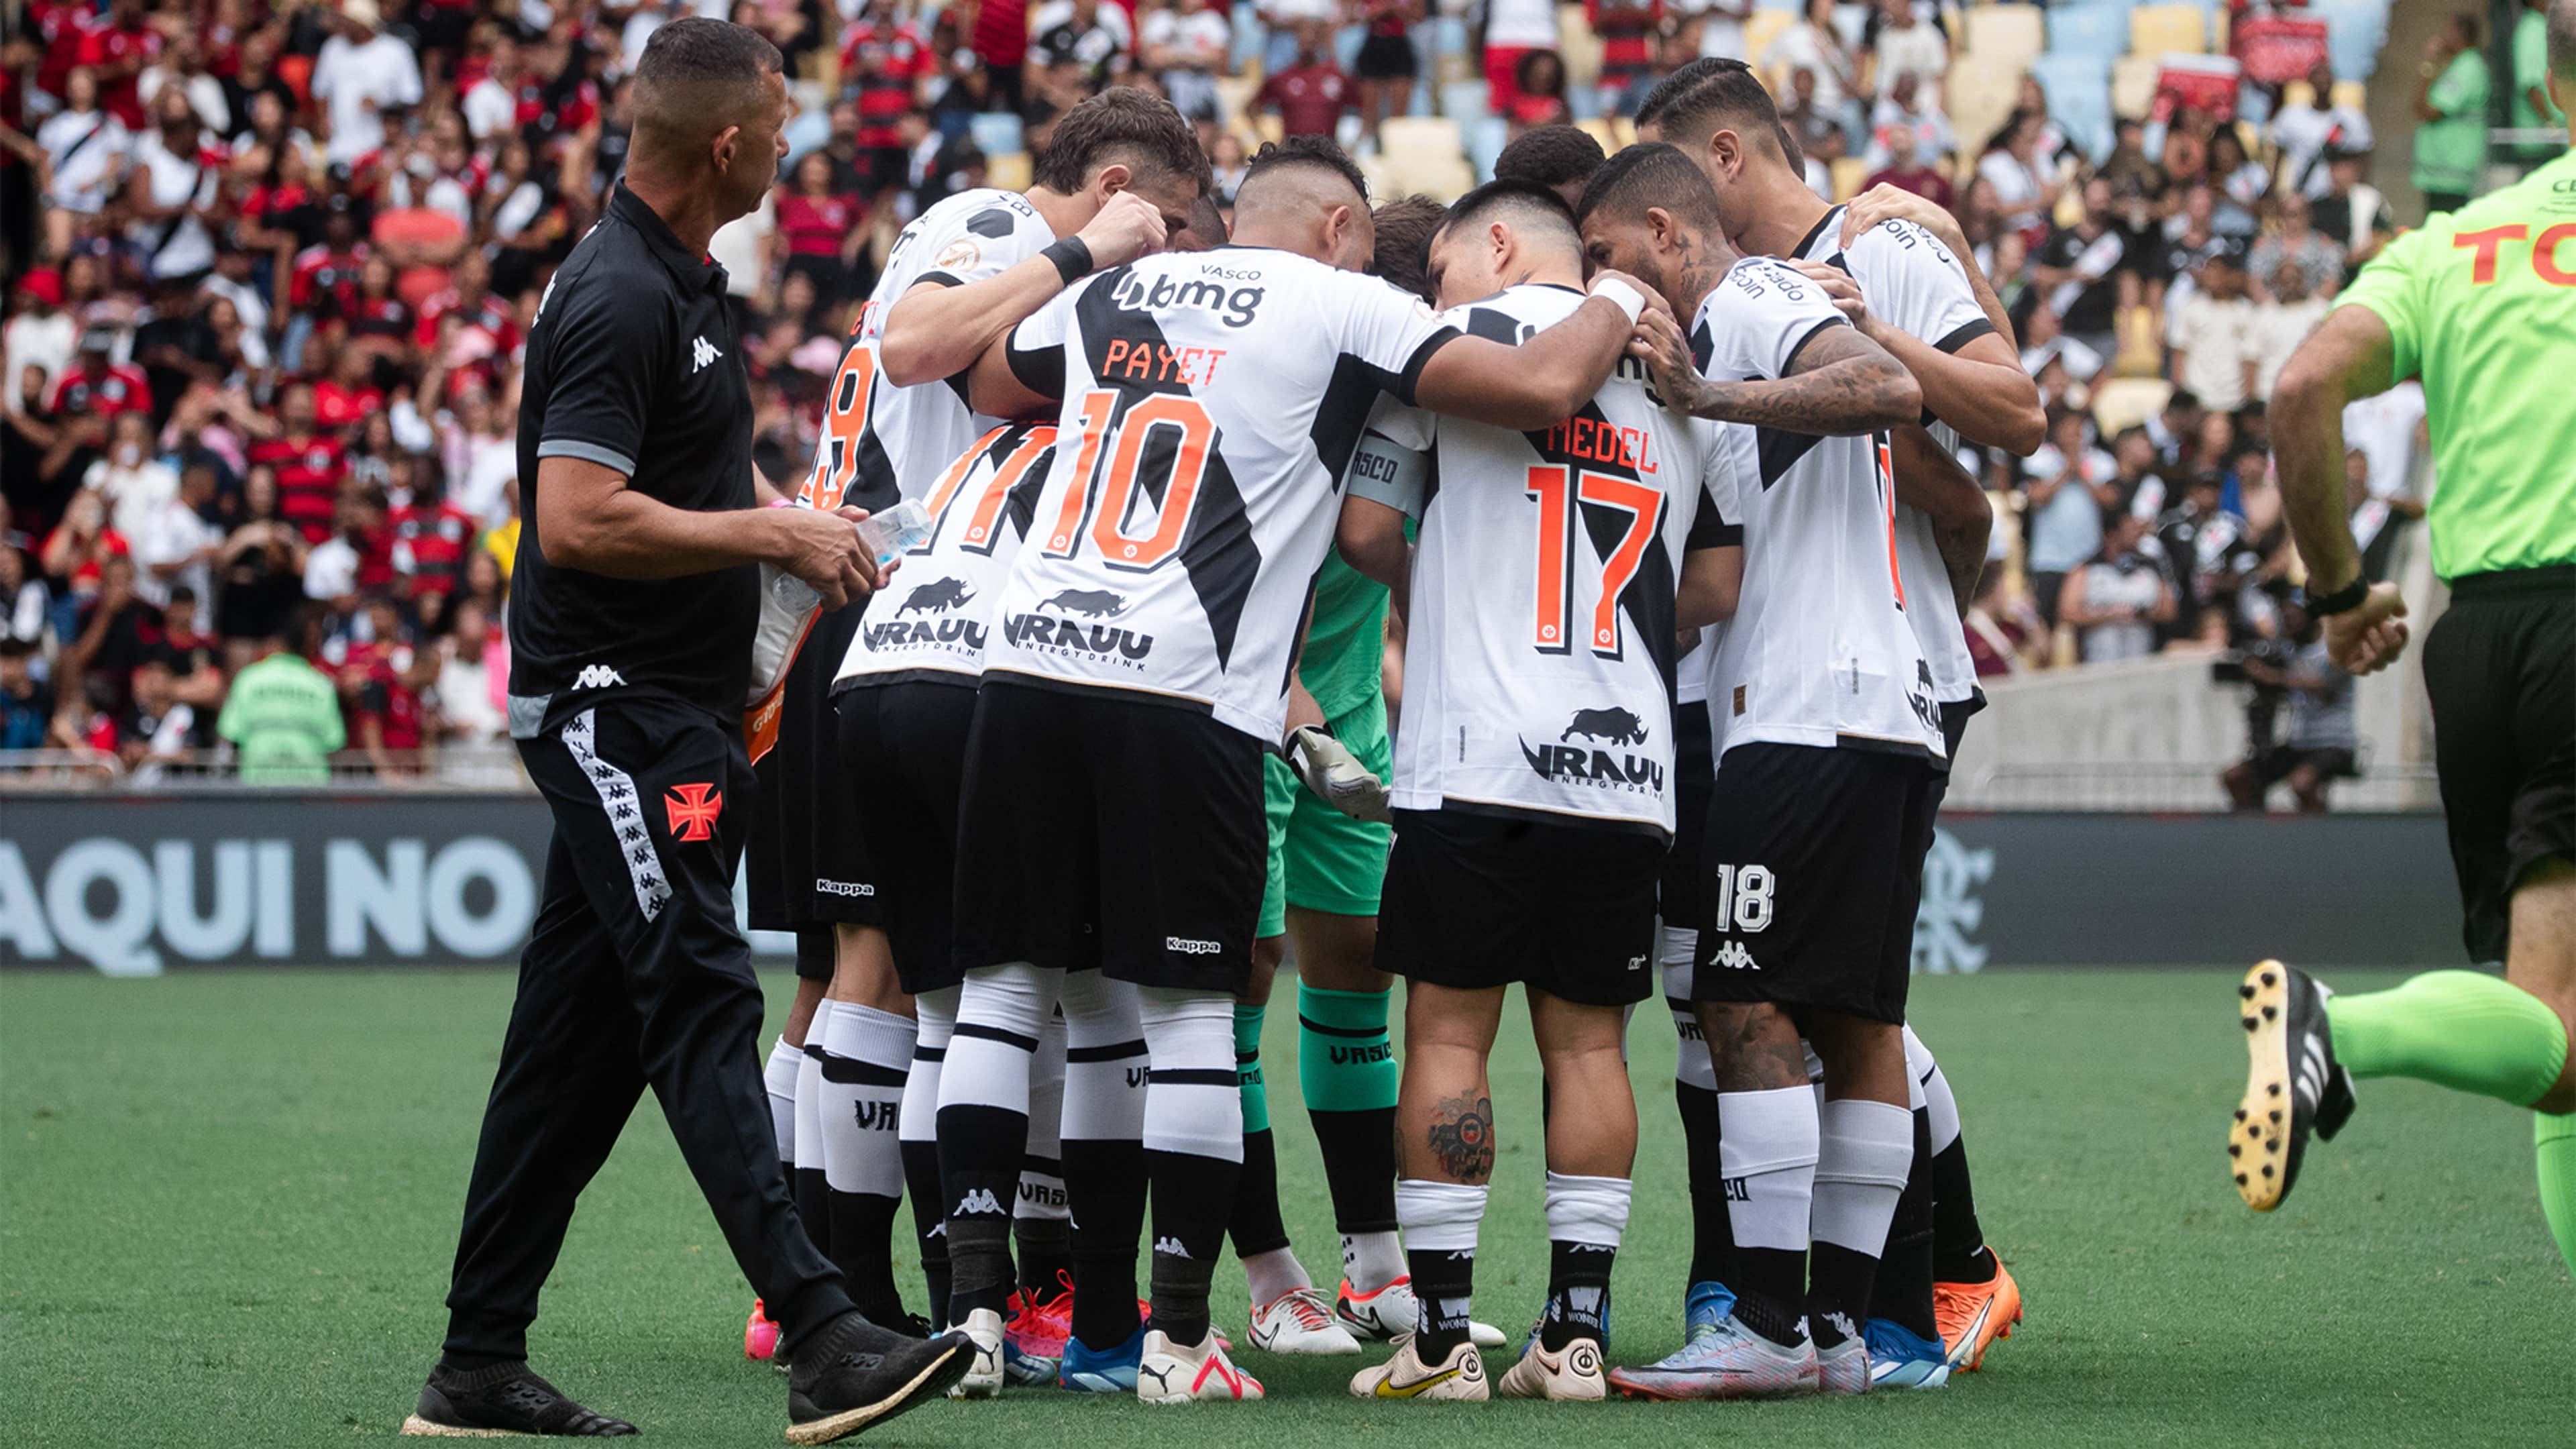 Jogos de Tombense: Descubra a Emoção do Futebol em Minas Gerais